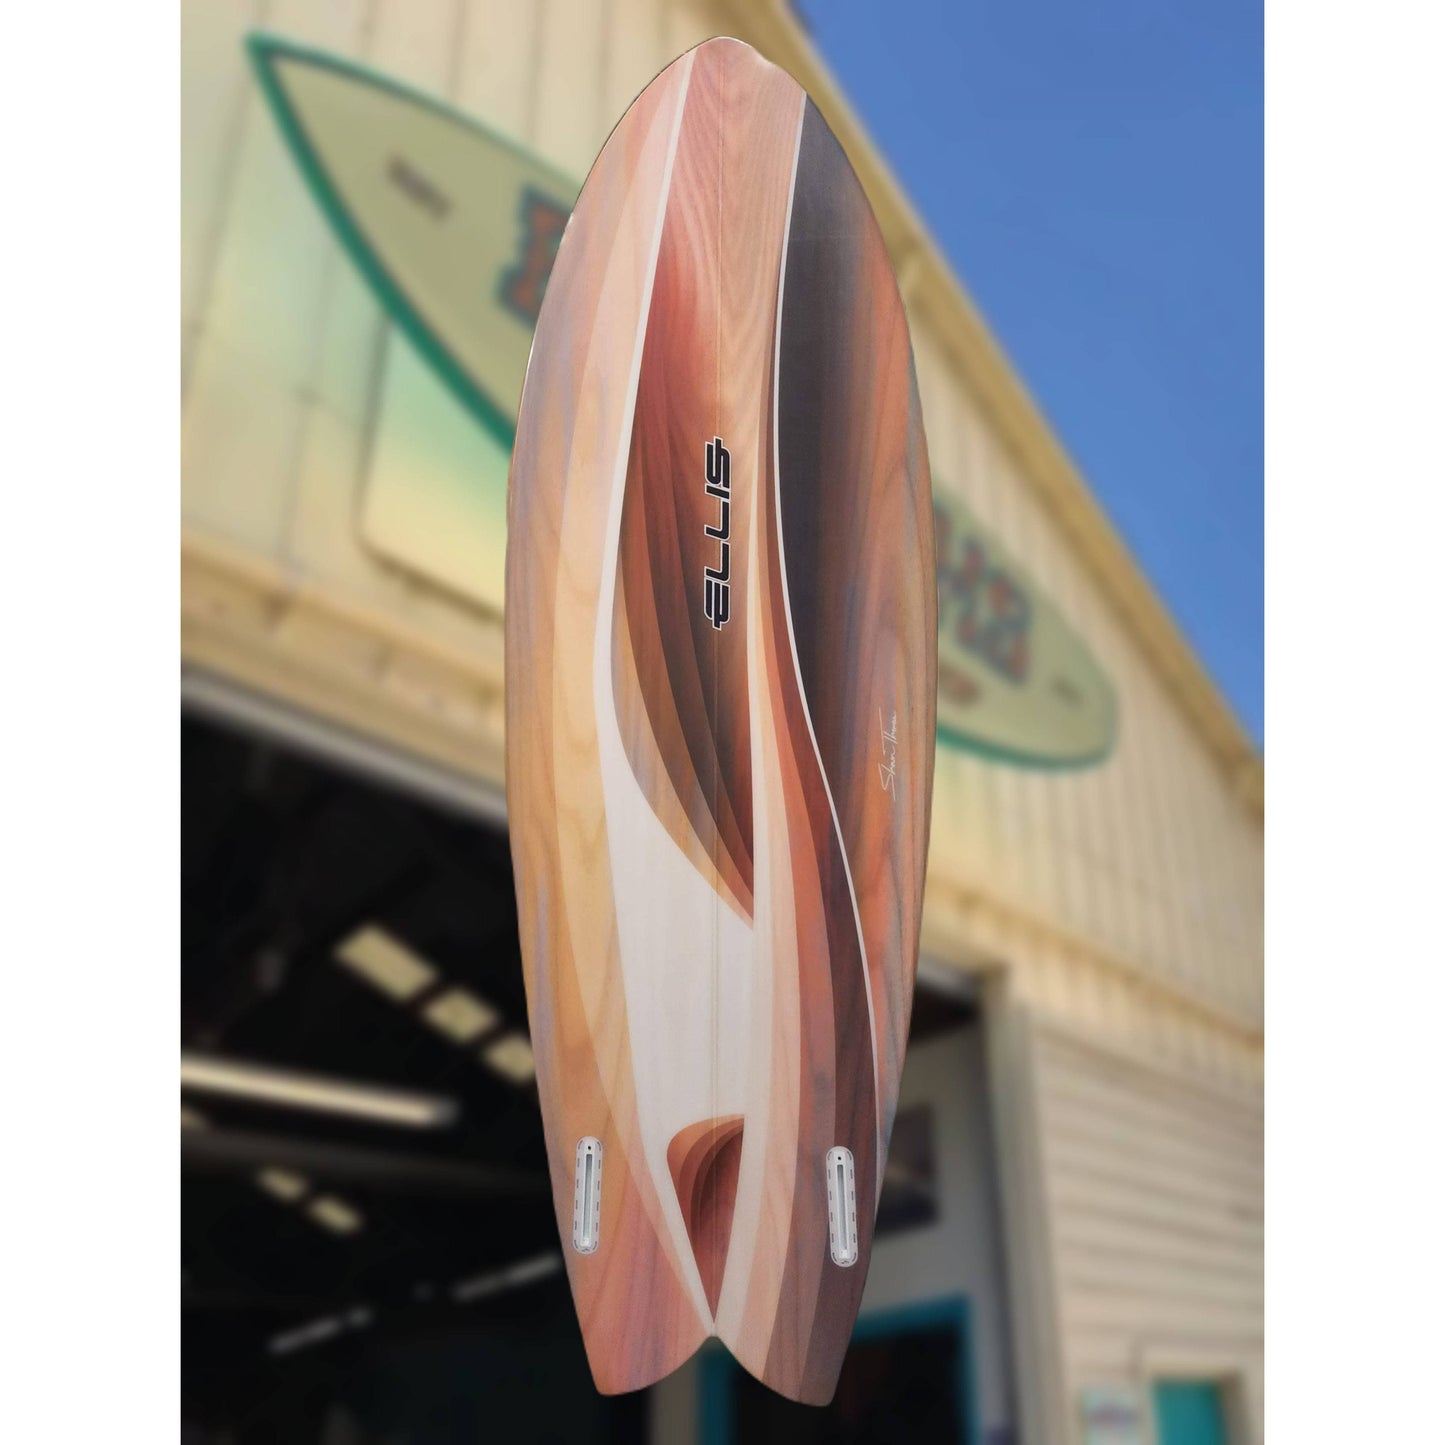 ELLIS Twin 5'5" - Basham's Factory & Surf Shop